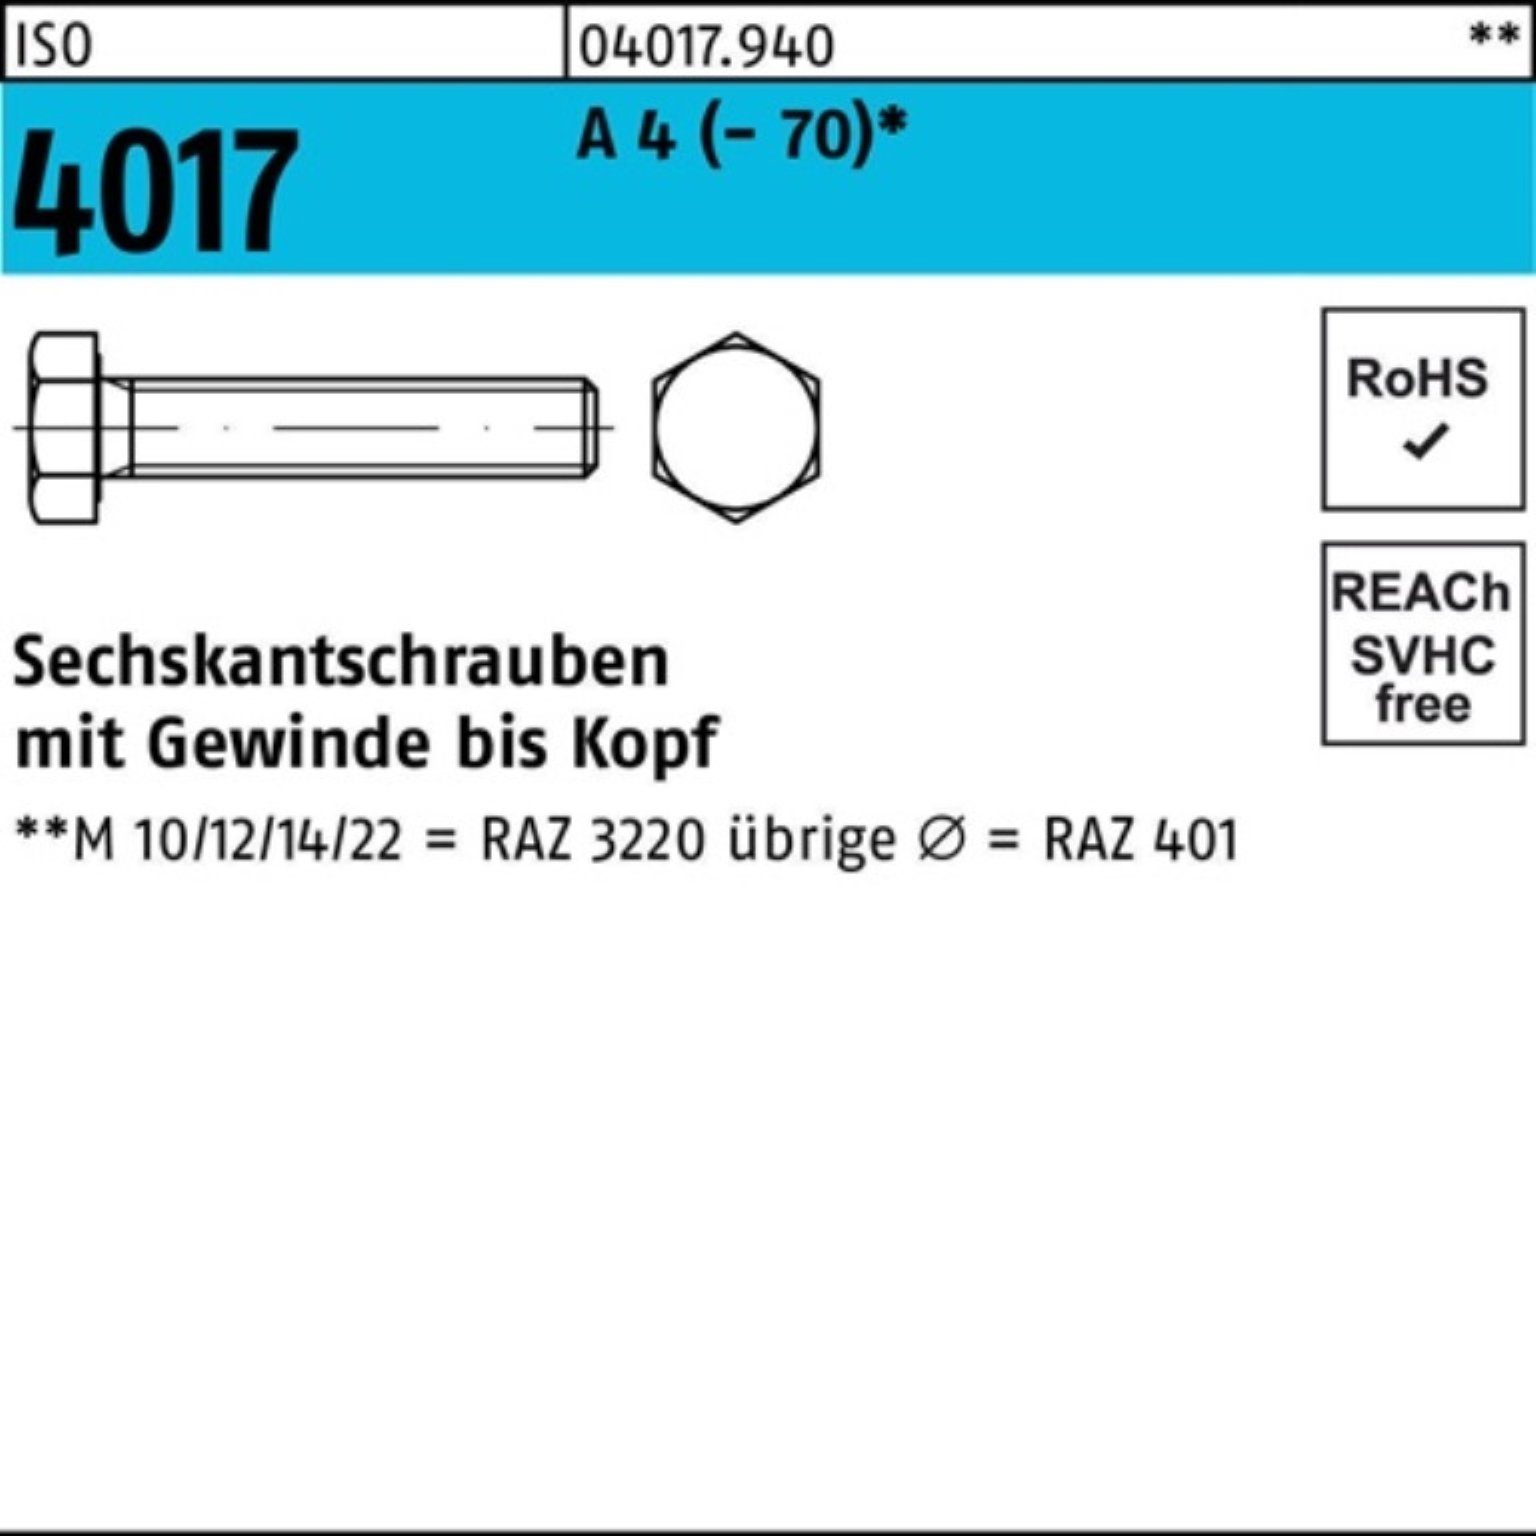 Bufab Sechskantschraube 100er Pack Sechskantschraube ISO 4017 VG M5x 70 A 4 (70) 100 Stück